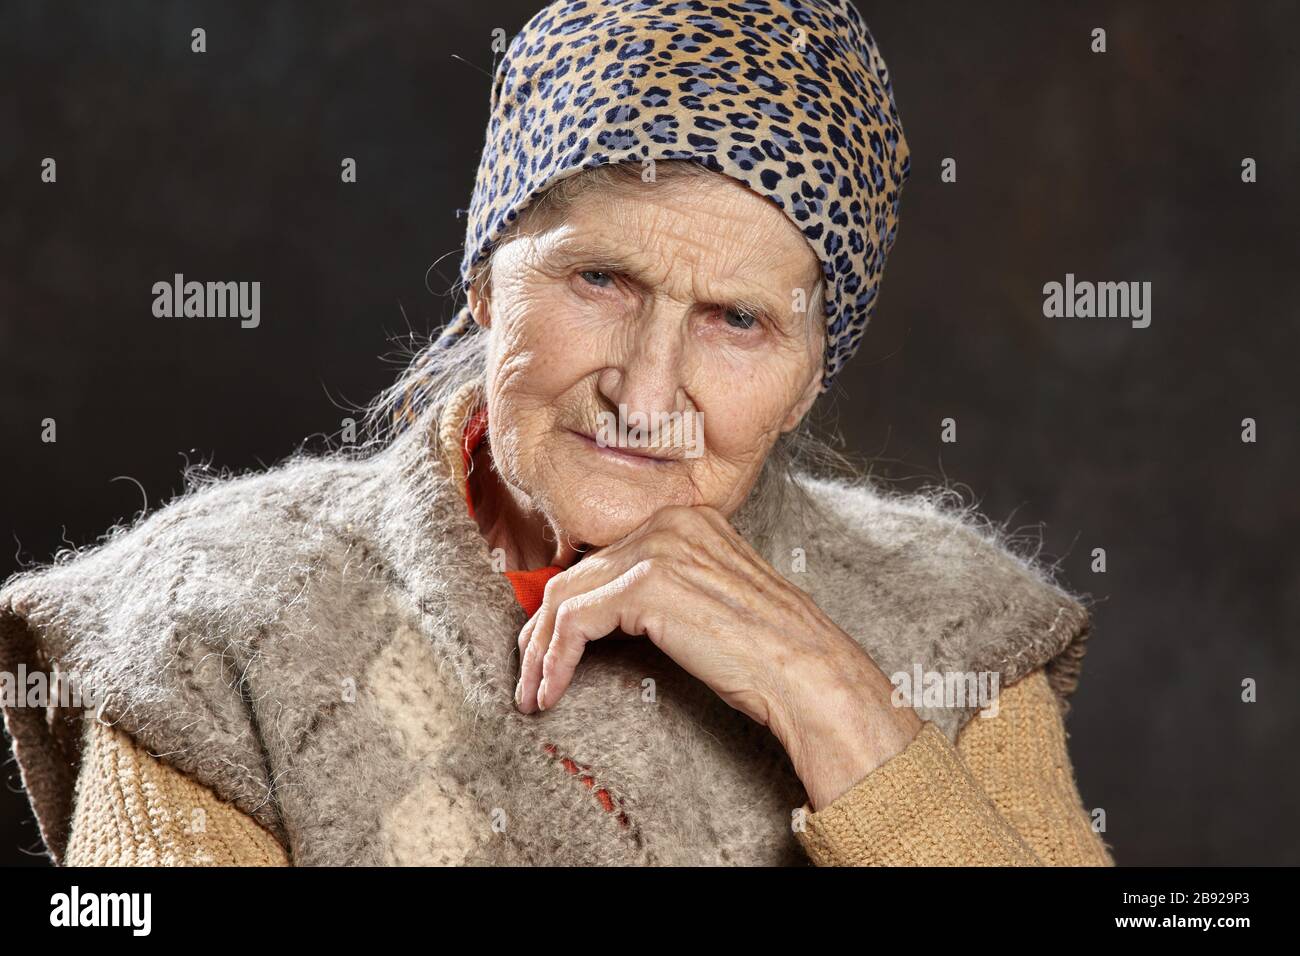 Nahaufnahme Porträt einer alten Frau mit nachdenklichen Blick auf dunklen Hintergrund. Menschen solchen Alters sind während Epidemien am anfälligsten. Stockfoto